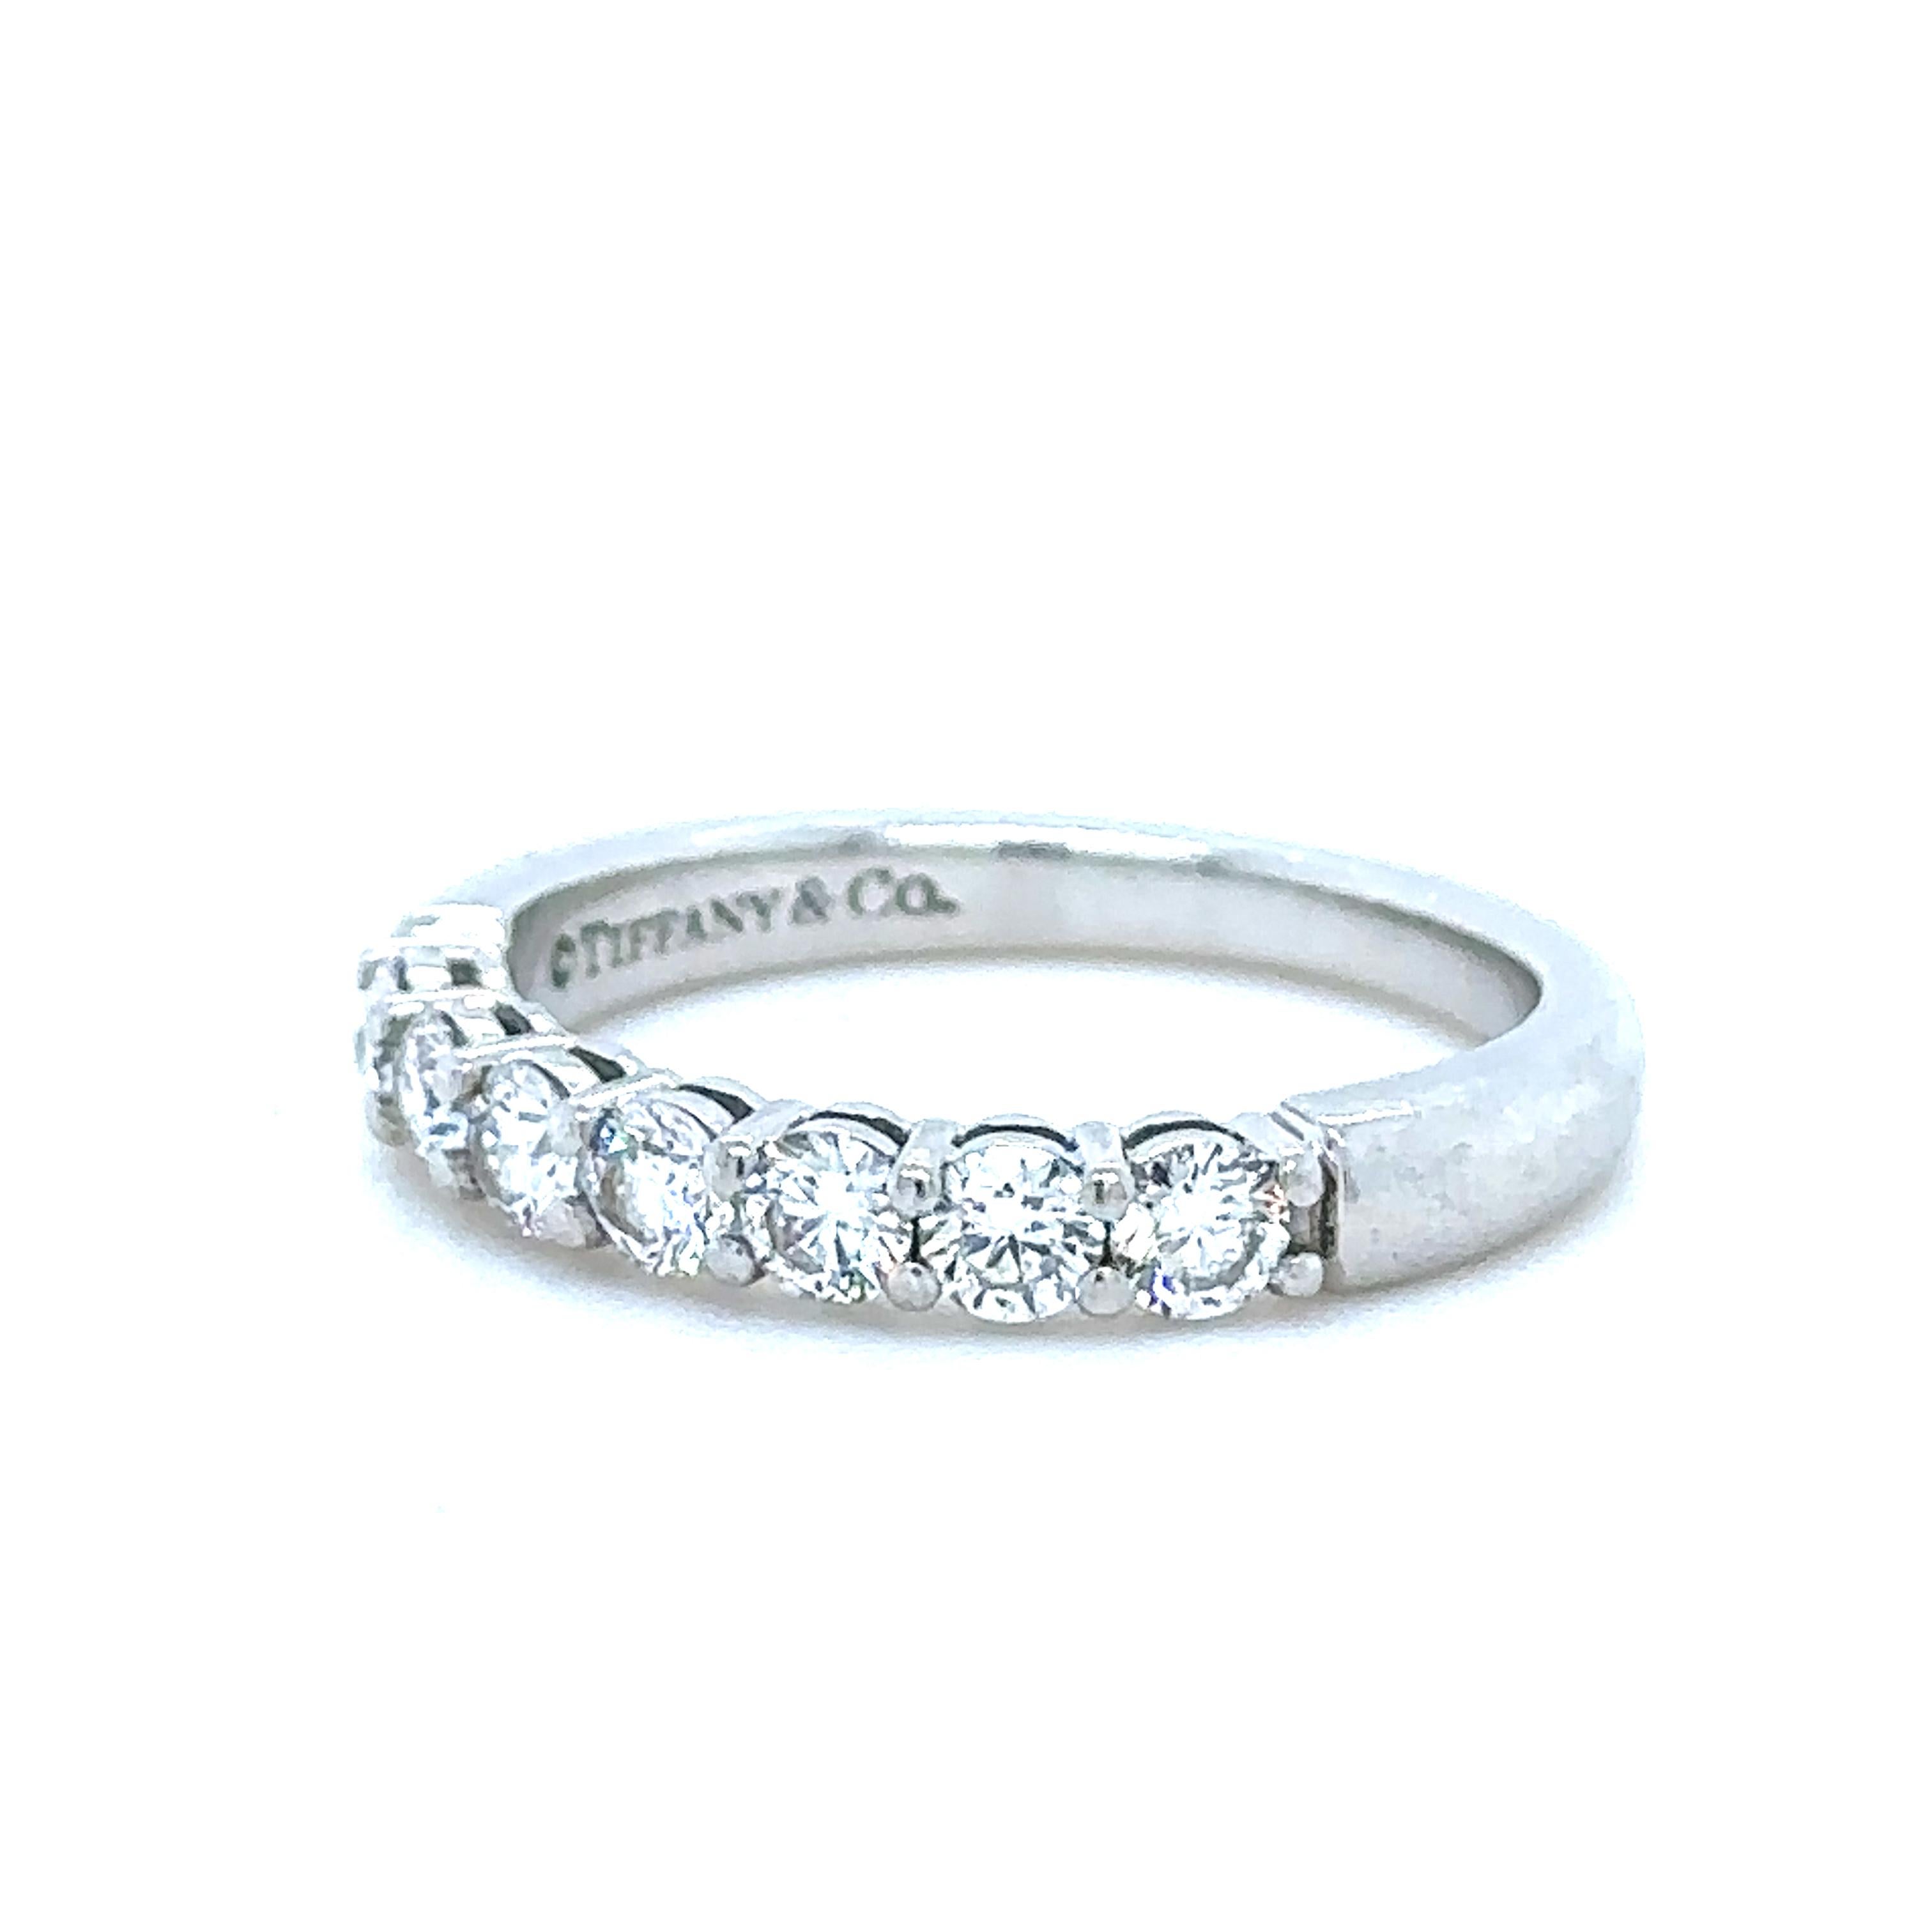 Einzigartige Merkmale:

Ein Tiffany & Co Diamond Eternity Ring, hergestellt aus 950 Platin, Ringgröße L1/2, und wiegt 4,8 gm.

Besetzt mit 7 runden Diamanten im Brillantschliff, ungefähr Farbe F und Reinheit VS mit einem Gesamtgewicht von 0,60